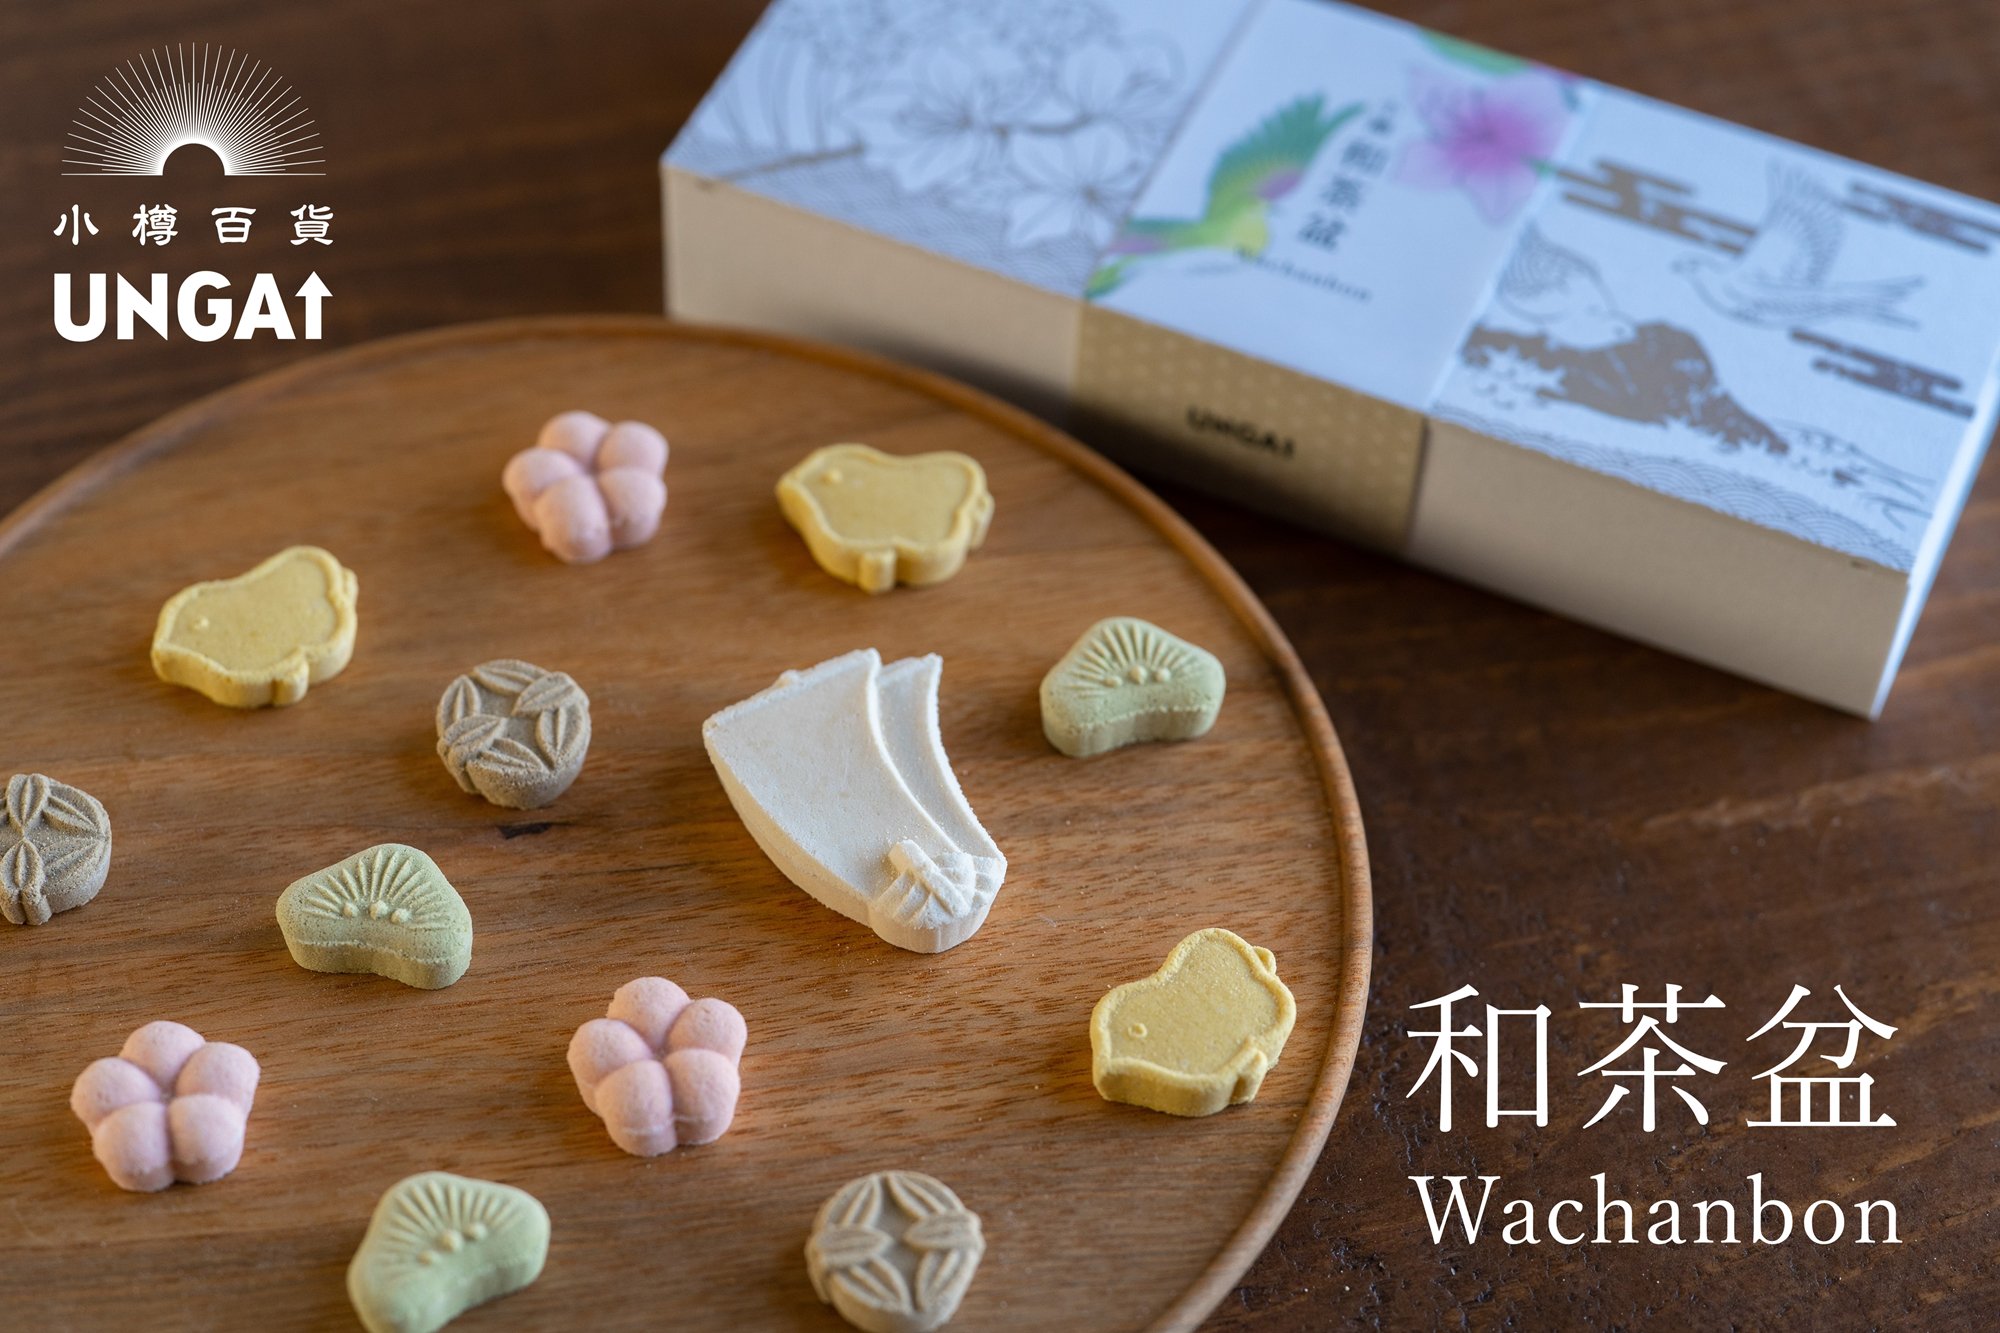 Tea-scented wasanbon sugar